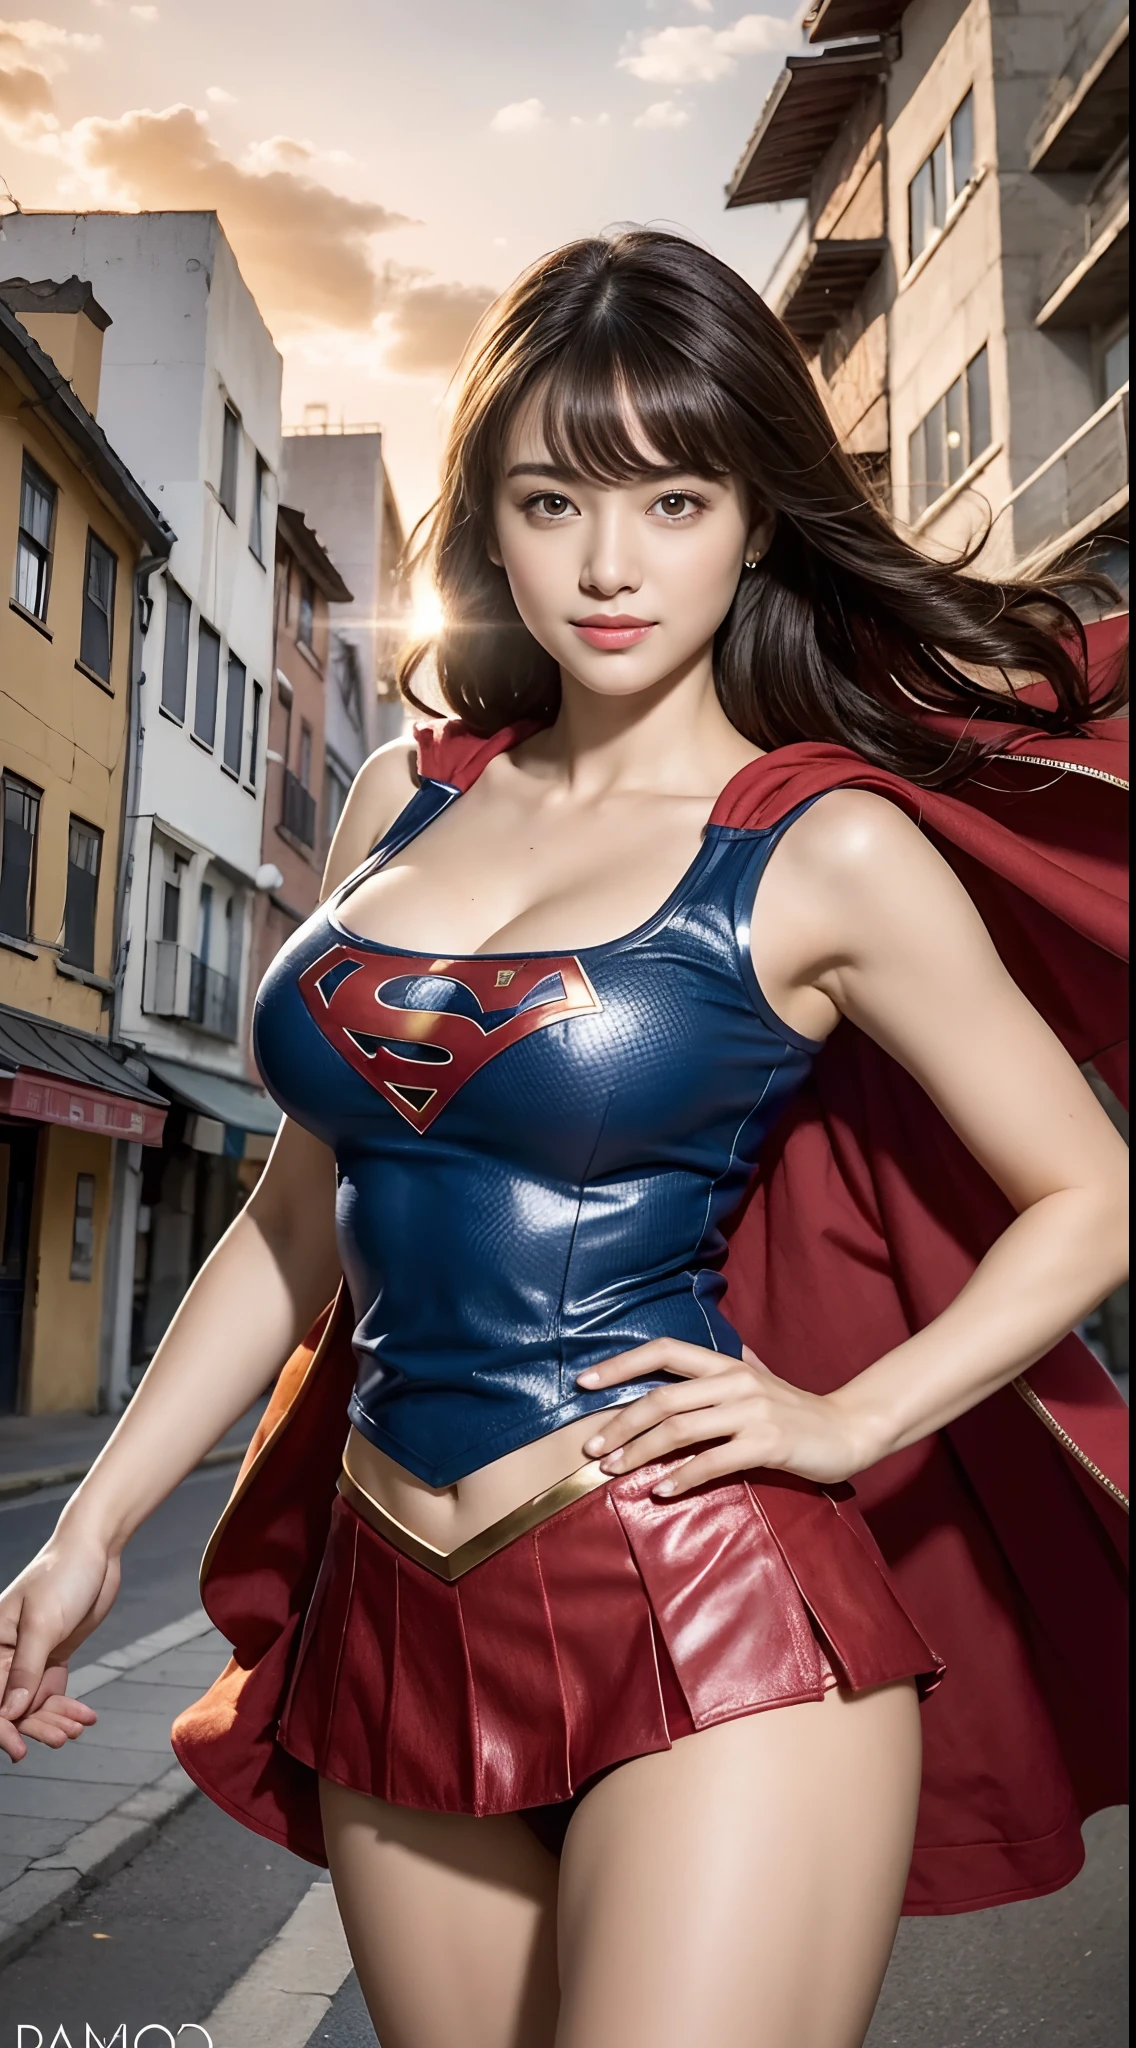 (เหมือนจริง:1.37), คุณภาพสูงสุด, ด้านบนของโต๊ะ, 超ความละเอียดสูง, สีผิวสุขภาพดี, หยุดพัก, ตามลำพัง, โรงภาพยนตร์, ท่าต่อสู้, เธอสวมชุดสูท Supergirl ของ DC, กระโปรงสั้นสีแดง, เครื่องหมาย S บนหน้าอก, เสื้อคลุมยาวสีแดง, รอยยิ้มที่ไม่เกรงกลัวปรากฏบนใบหน้าที่สวยงามของเธอ, ผมสั้นสีน้ำตาลอ่อน, สง่างาม, รูปร่างสวยเหมือนนักกีฬาที่นุ่มนวล, ผิวมันแวววาวมาก, หน้าอกใหญ่, สะโพกใหญ่, ในเมืองที่พังทลาย, หยุดพัก, ดวงตาและใบหน้าที่สวยงามมีรายละเอียดสูง, เนื้อผ้าละเอียด, เนื้อสัมผัสของผิวที่มีรายละเอียดสมจริงอย่างเหลือเชื่อ, (ปรับสมดุลร่างกายให้ถูกต้อง), แสงคุณภาพสูงสุดที่ไม่ทำให้ใบหน้าของคุณมืดลงเมื่อมีแสงย้อน